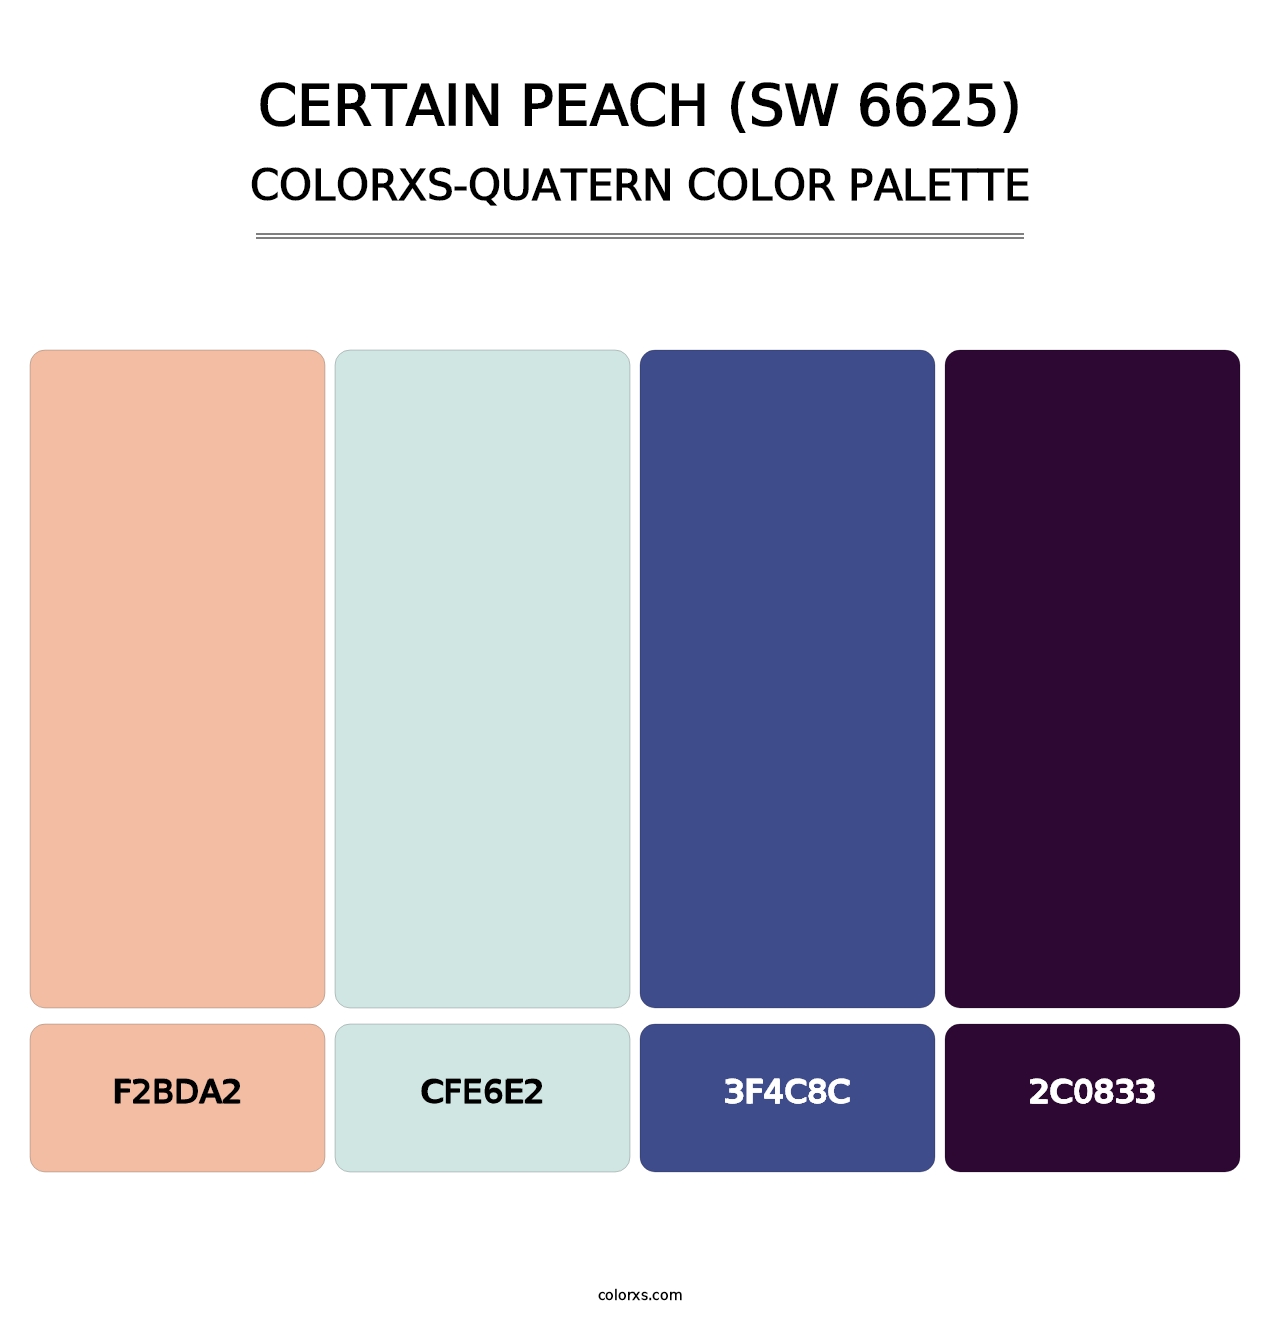 Certain Peach (SW 6625) - Colorxs Quatern Palette